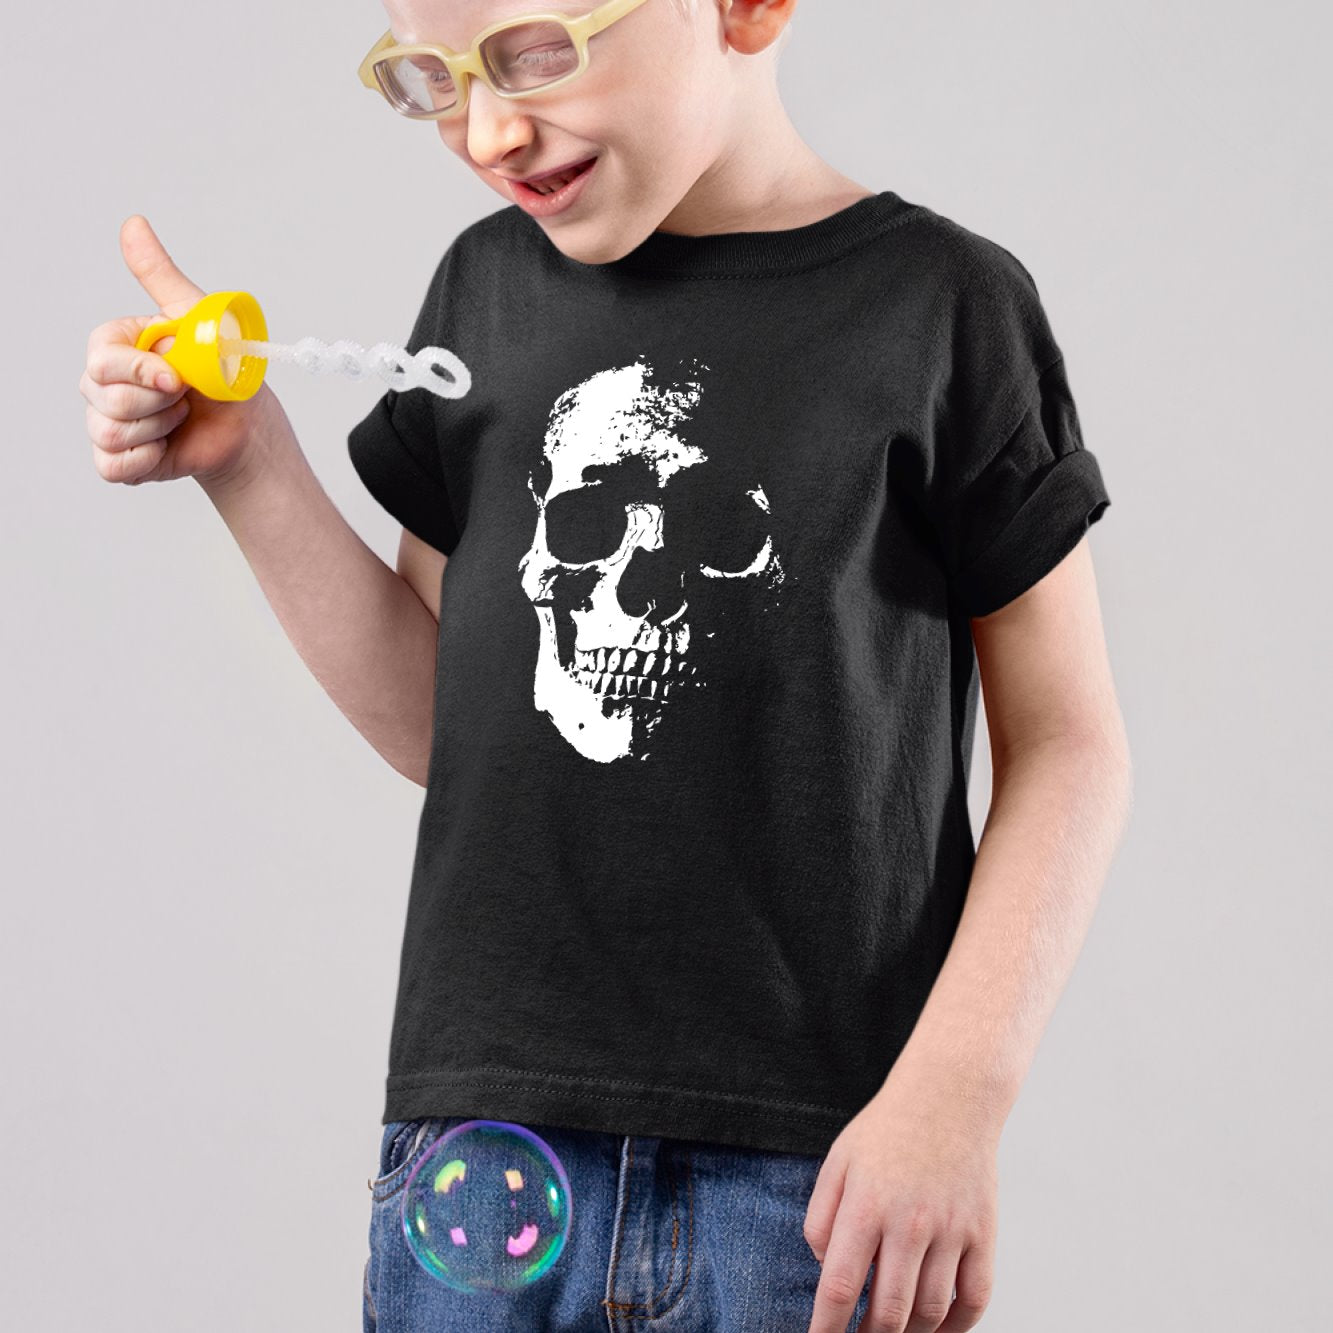 https://tshirt-culte.com/cdn/shop/products/t-shirt-enfant-tete-de-mort-noir-595006.jpg?v=1690650945